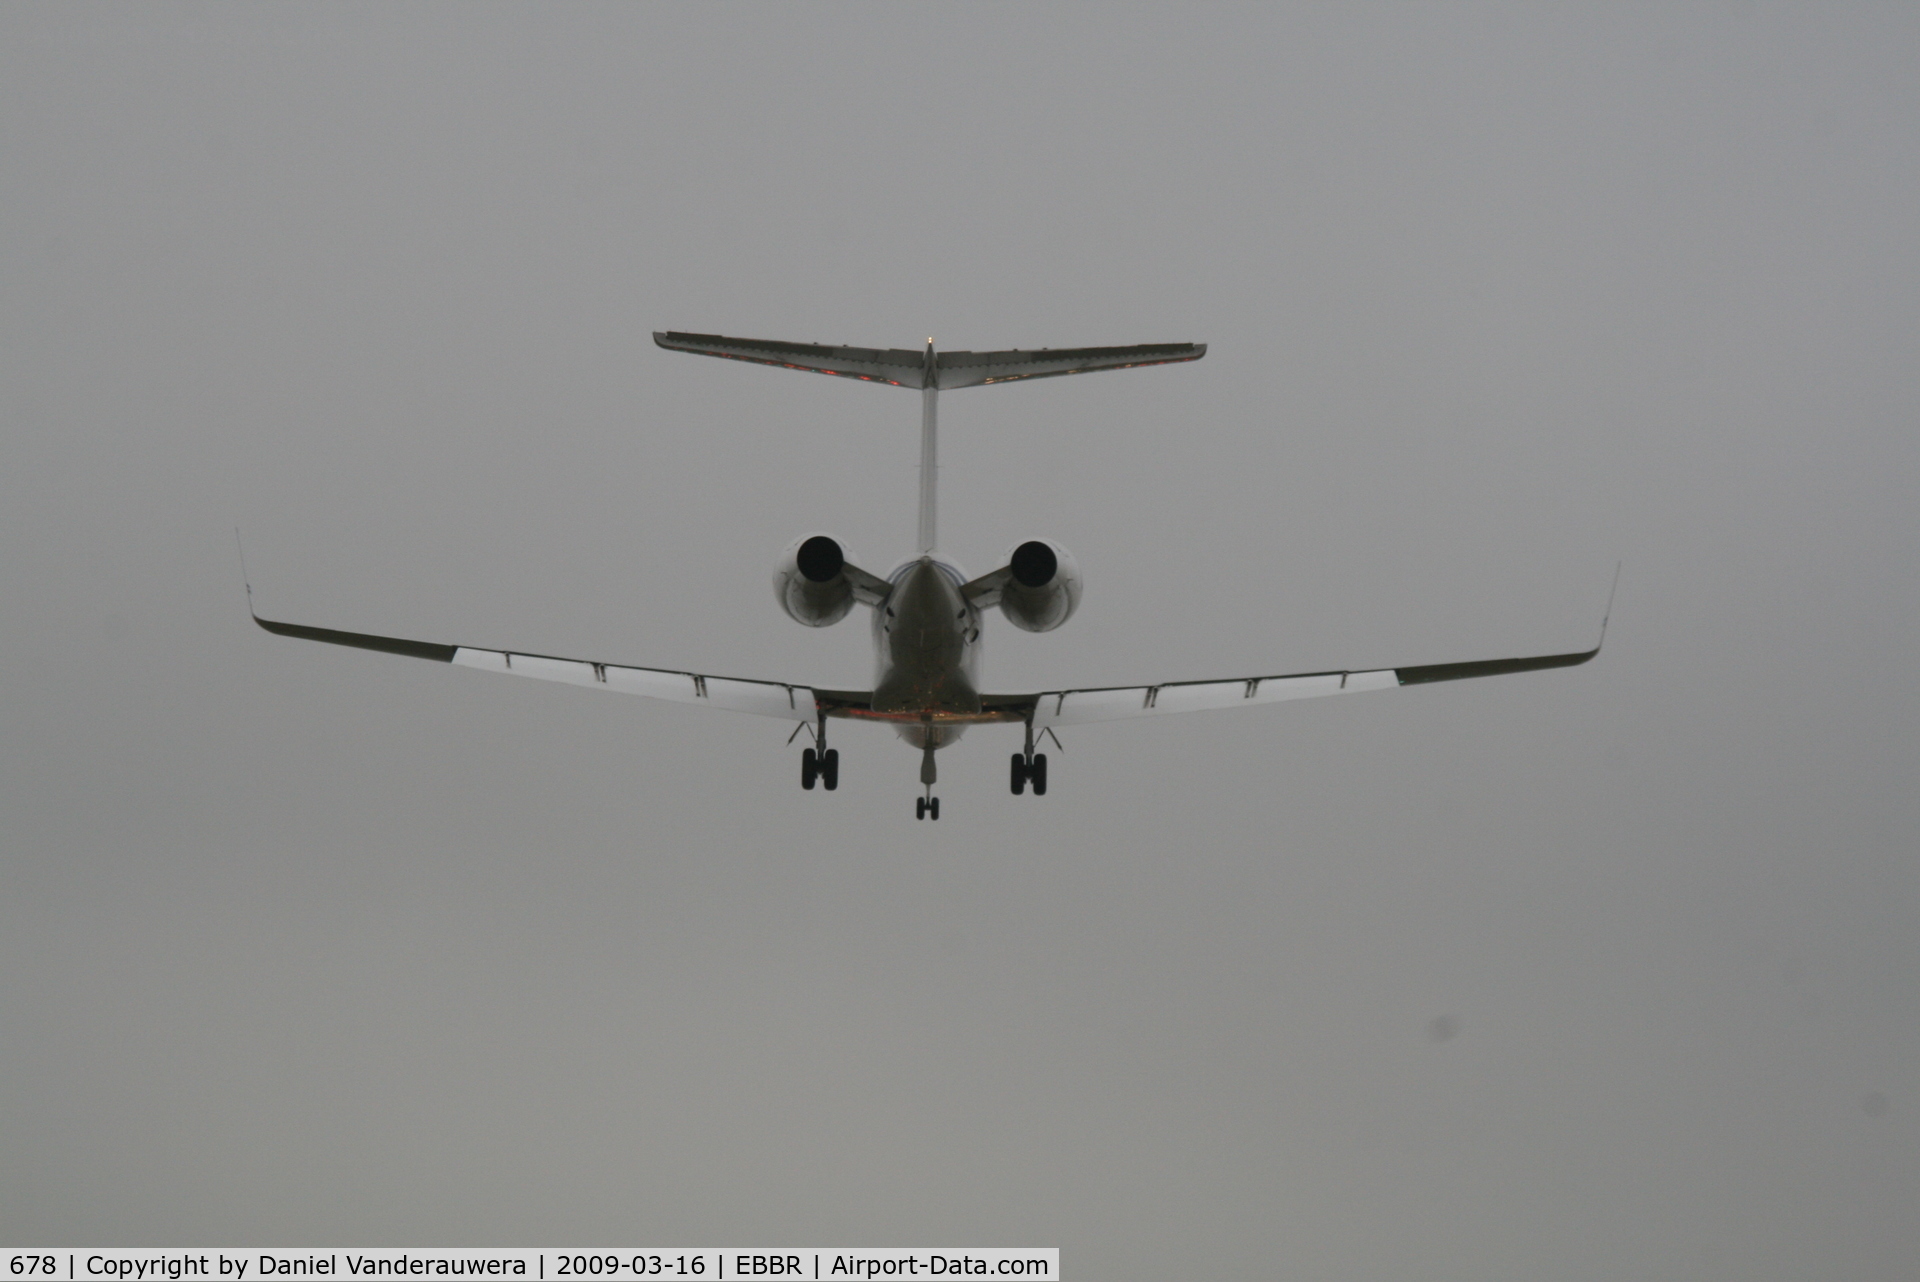 678, 2003 Gulfstream Aerospace G-V Gulfstream V C/N 678, descending to rwy 25L with fog